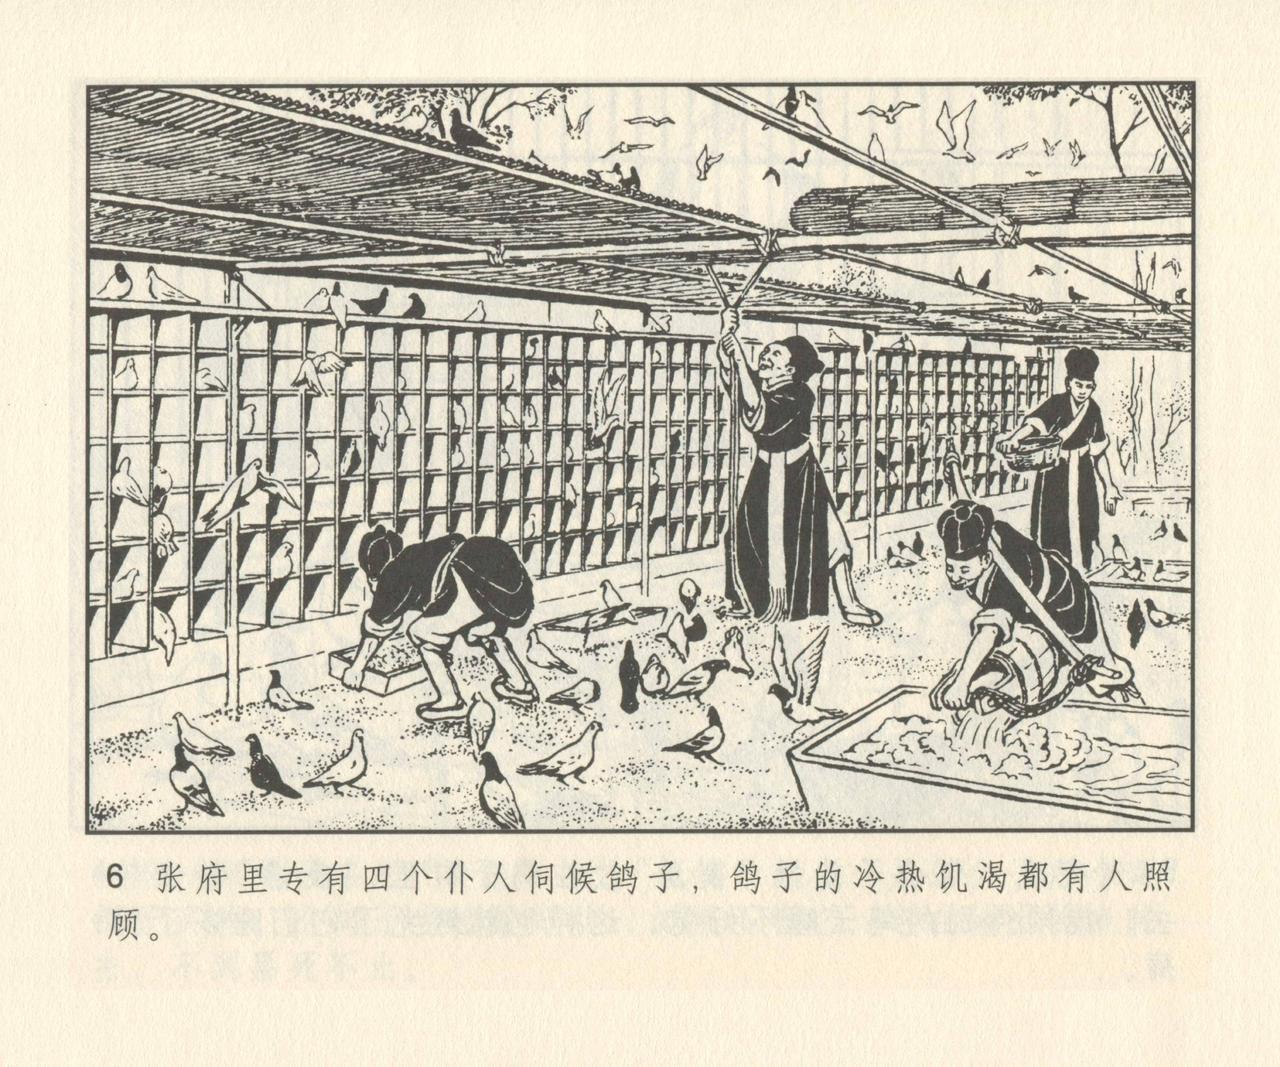 聊斋志异 张玮等绘 天津人民美术出版社 卷二十一 ~ 三十 134